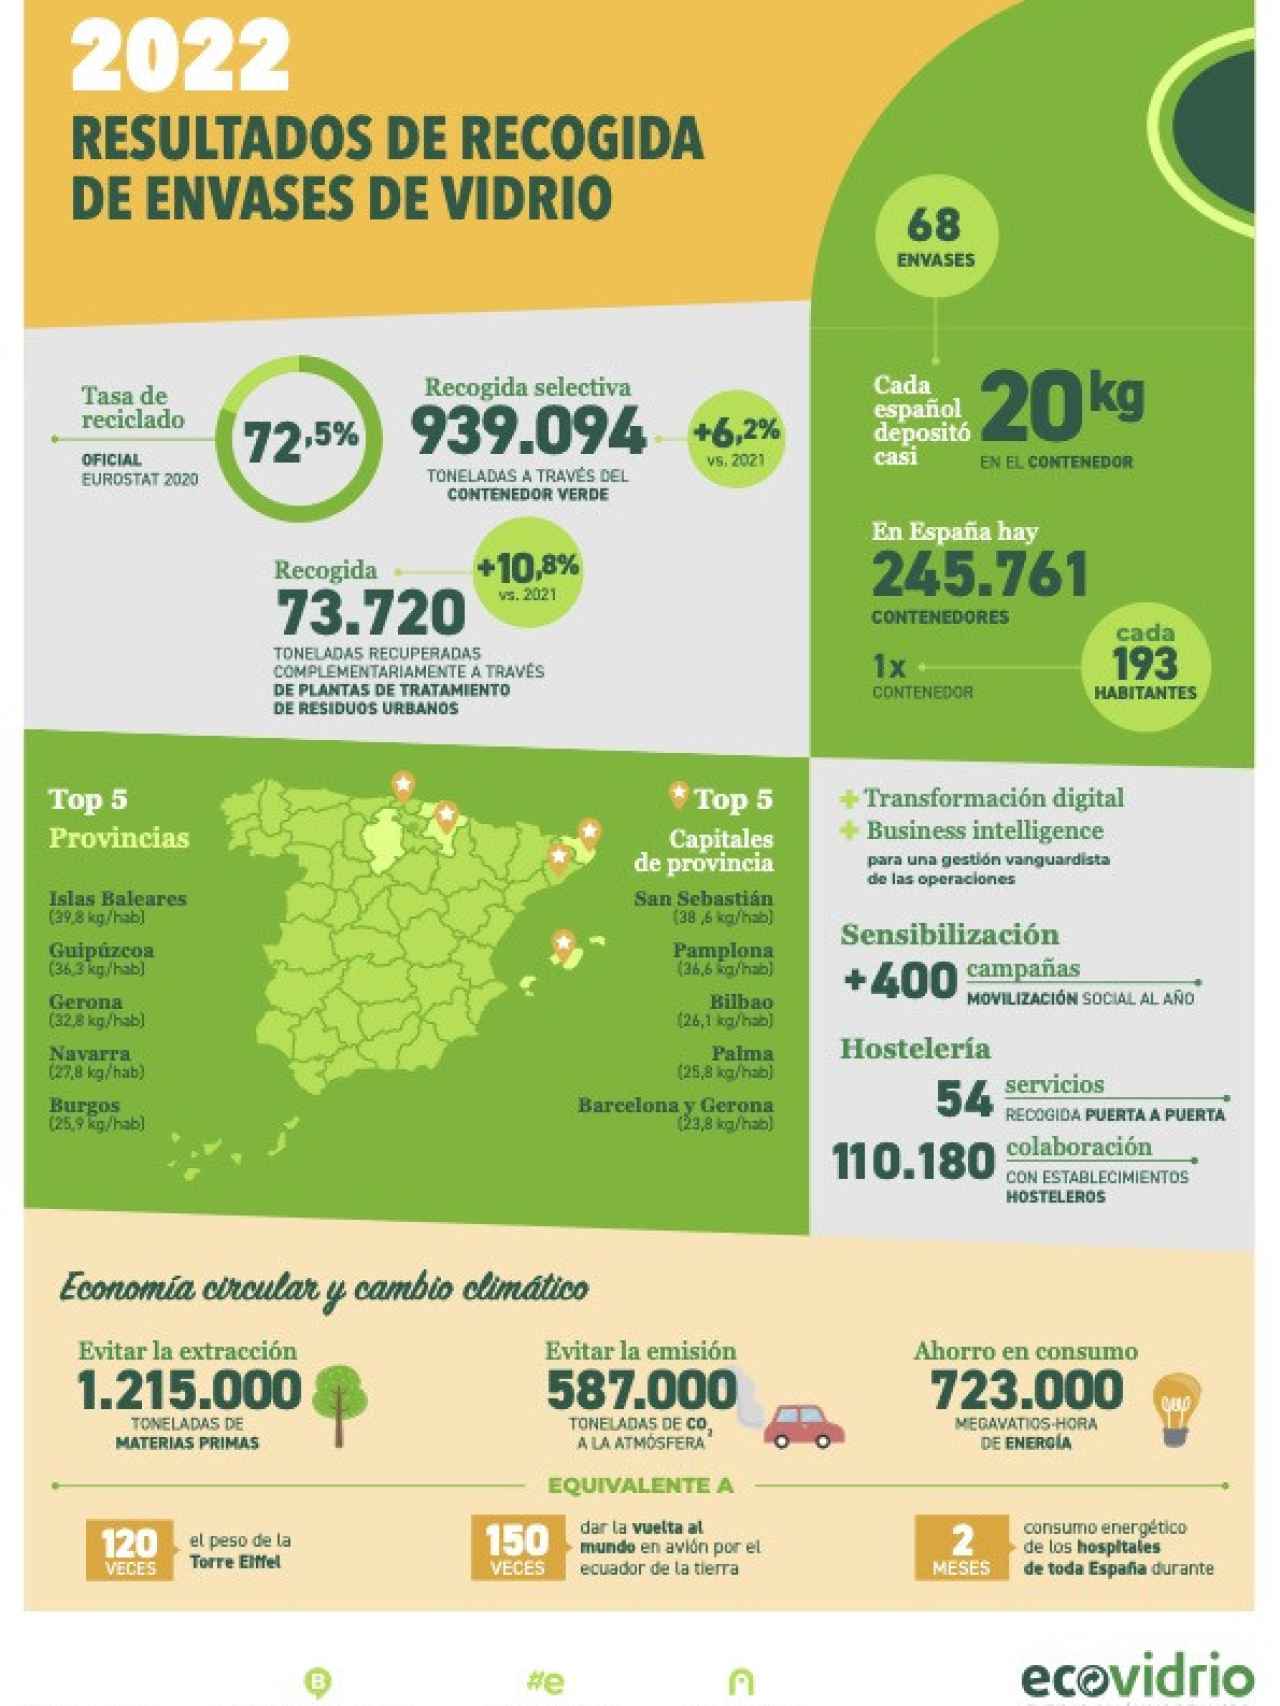 Infografia de resultados nacionales sobre reciclaje de envases de vidrio.